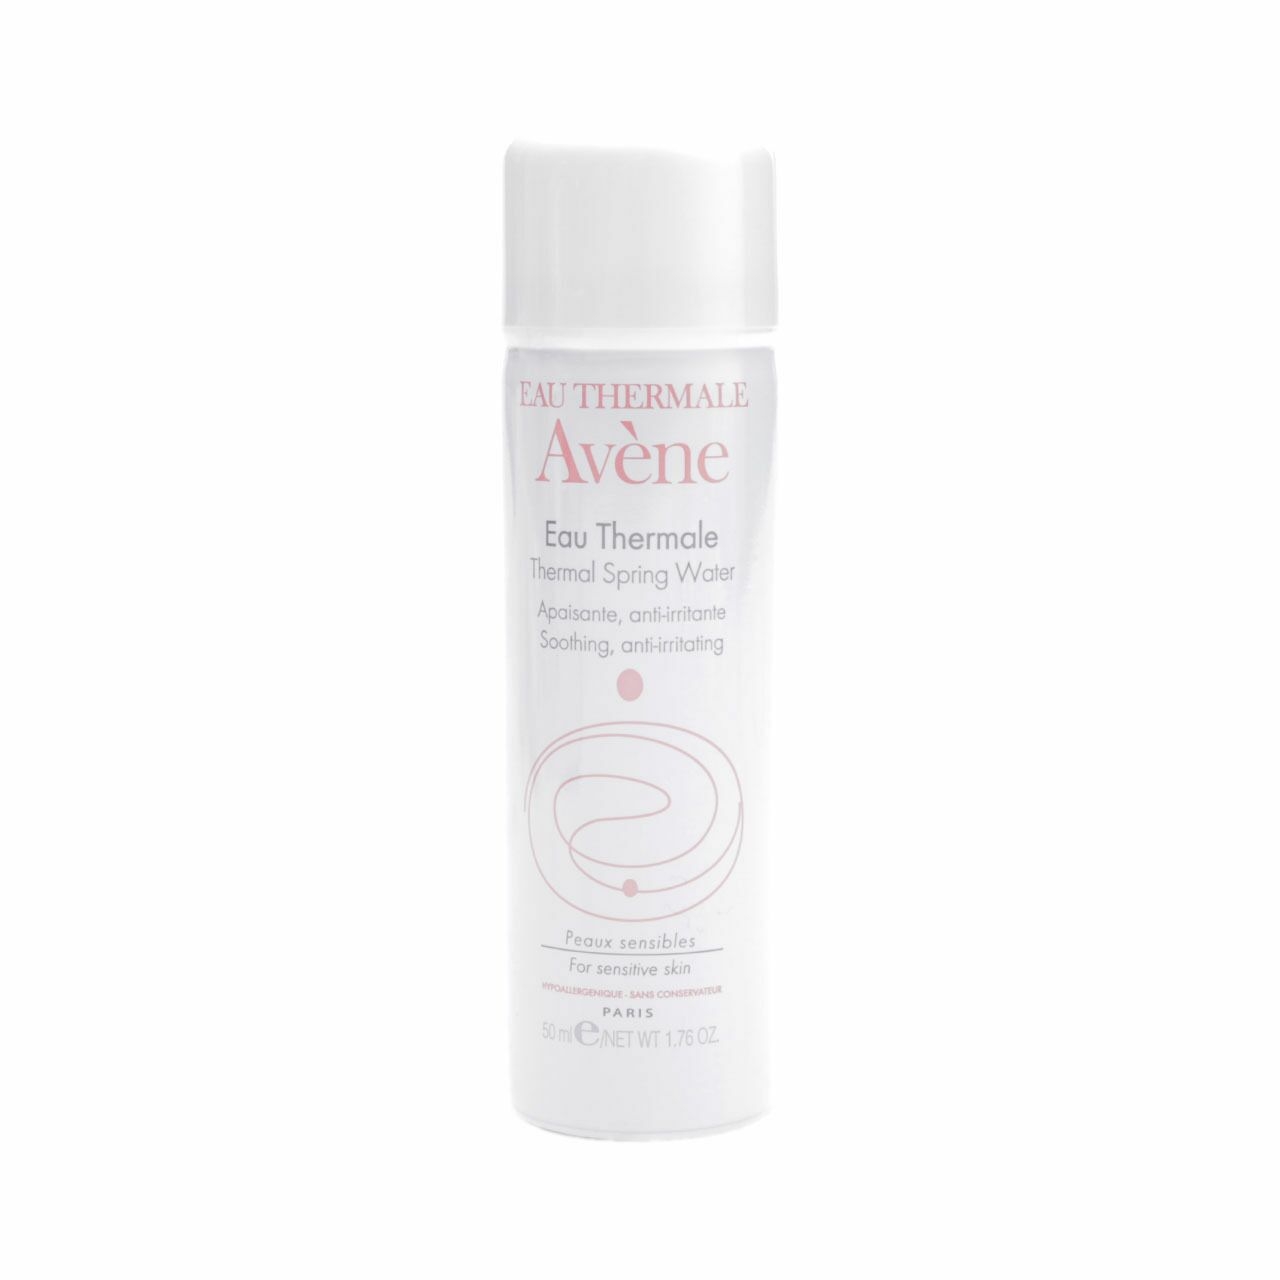 Avene Thermal Spring Water For Sensitive Skin